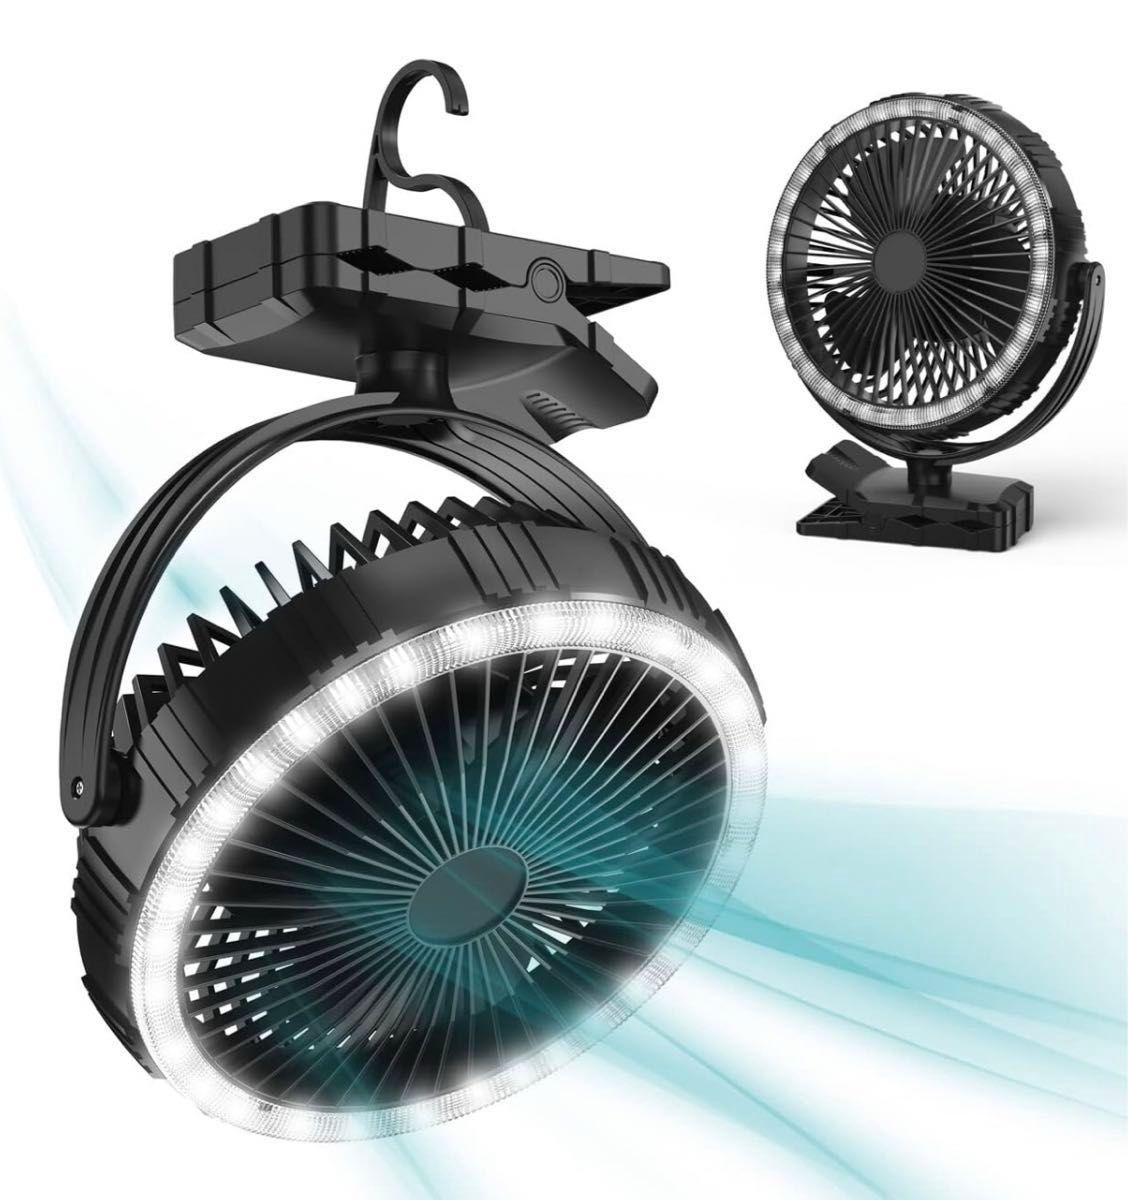 クリップオンファン LEDライト付き 充電式バッテリーテントファン 360°回転